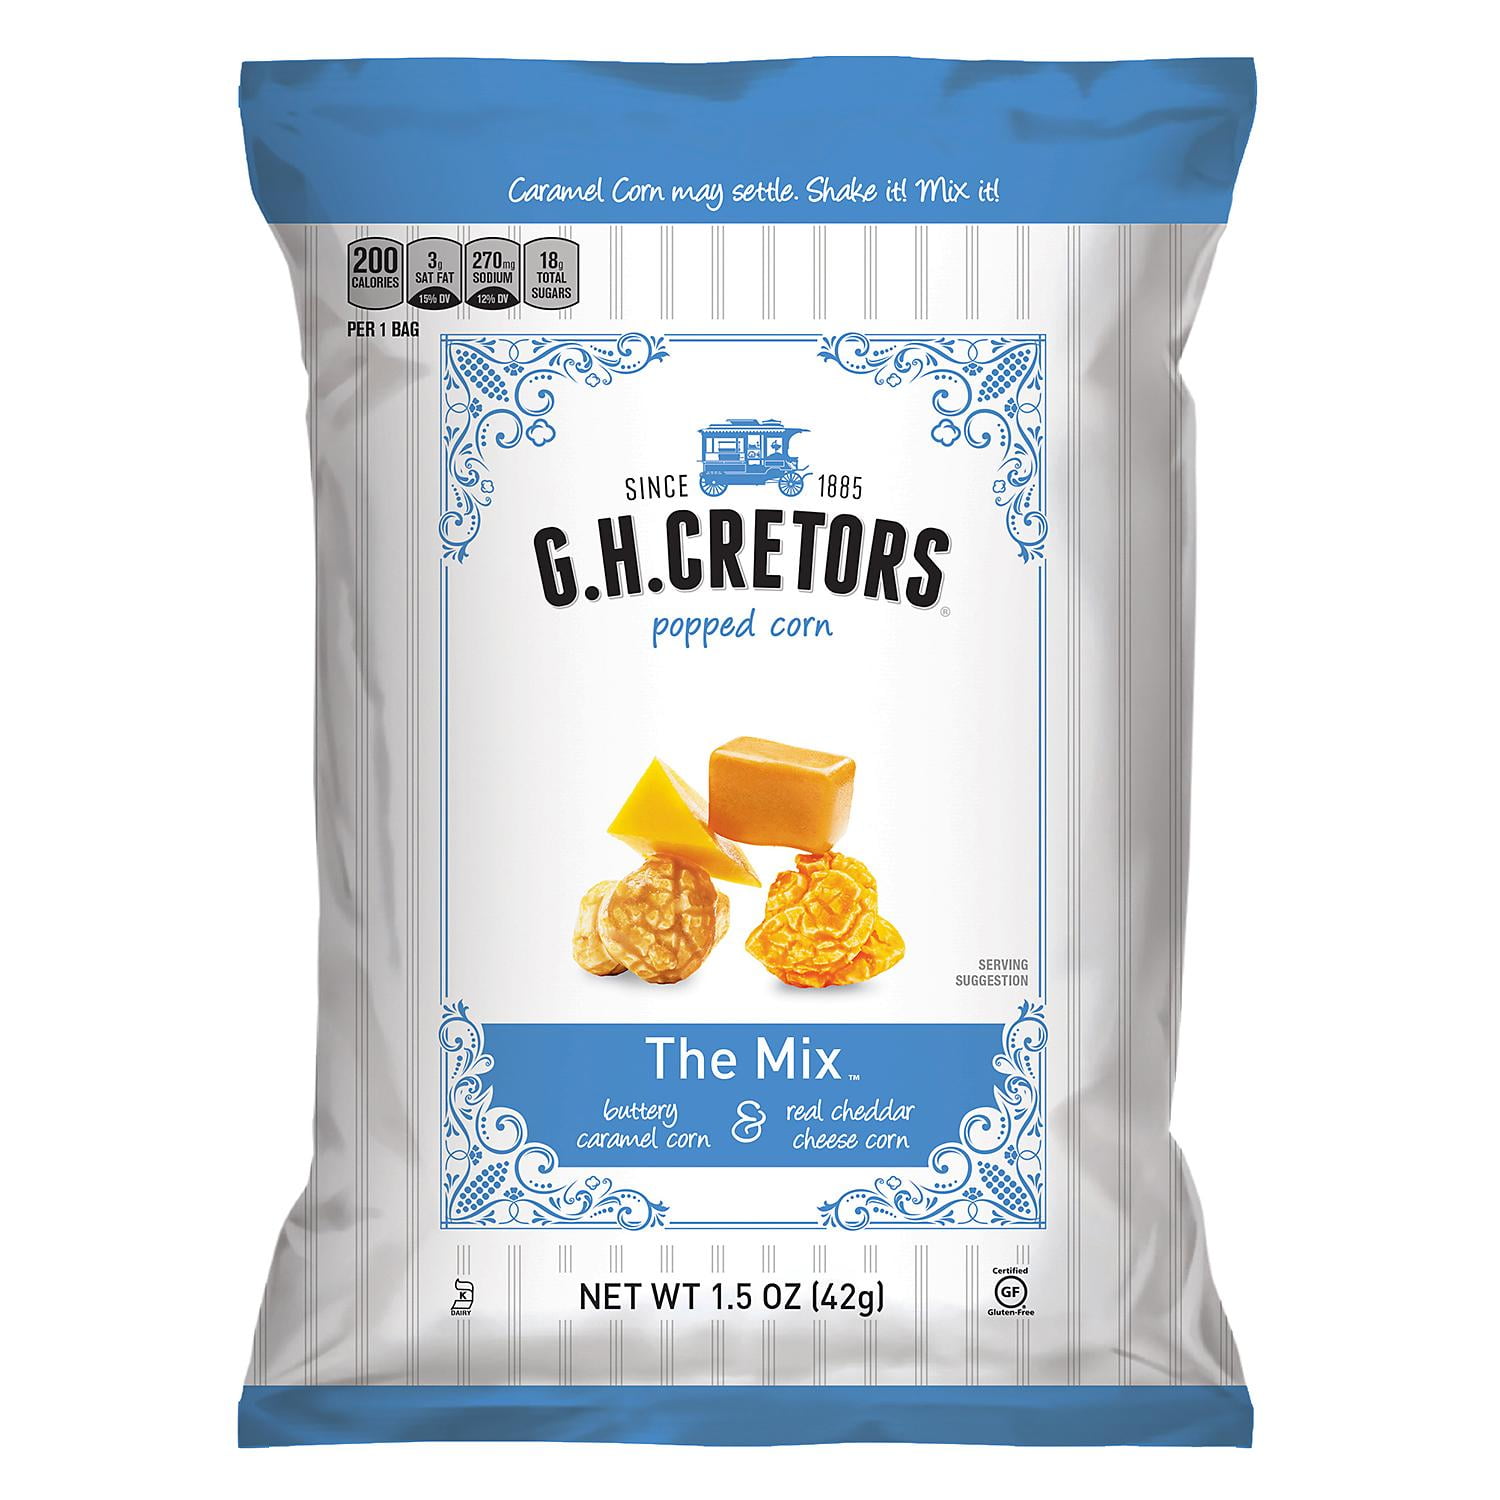 g-h-cretors-popcorn-the-mix-1-5oz-24ct-walmart-walmart